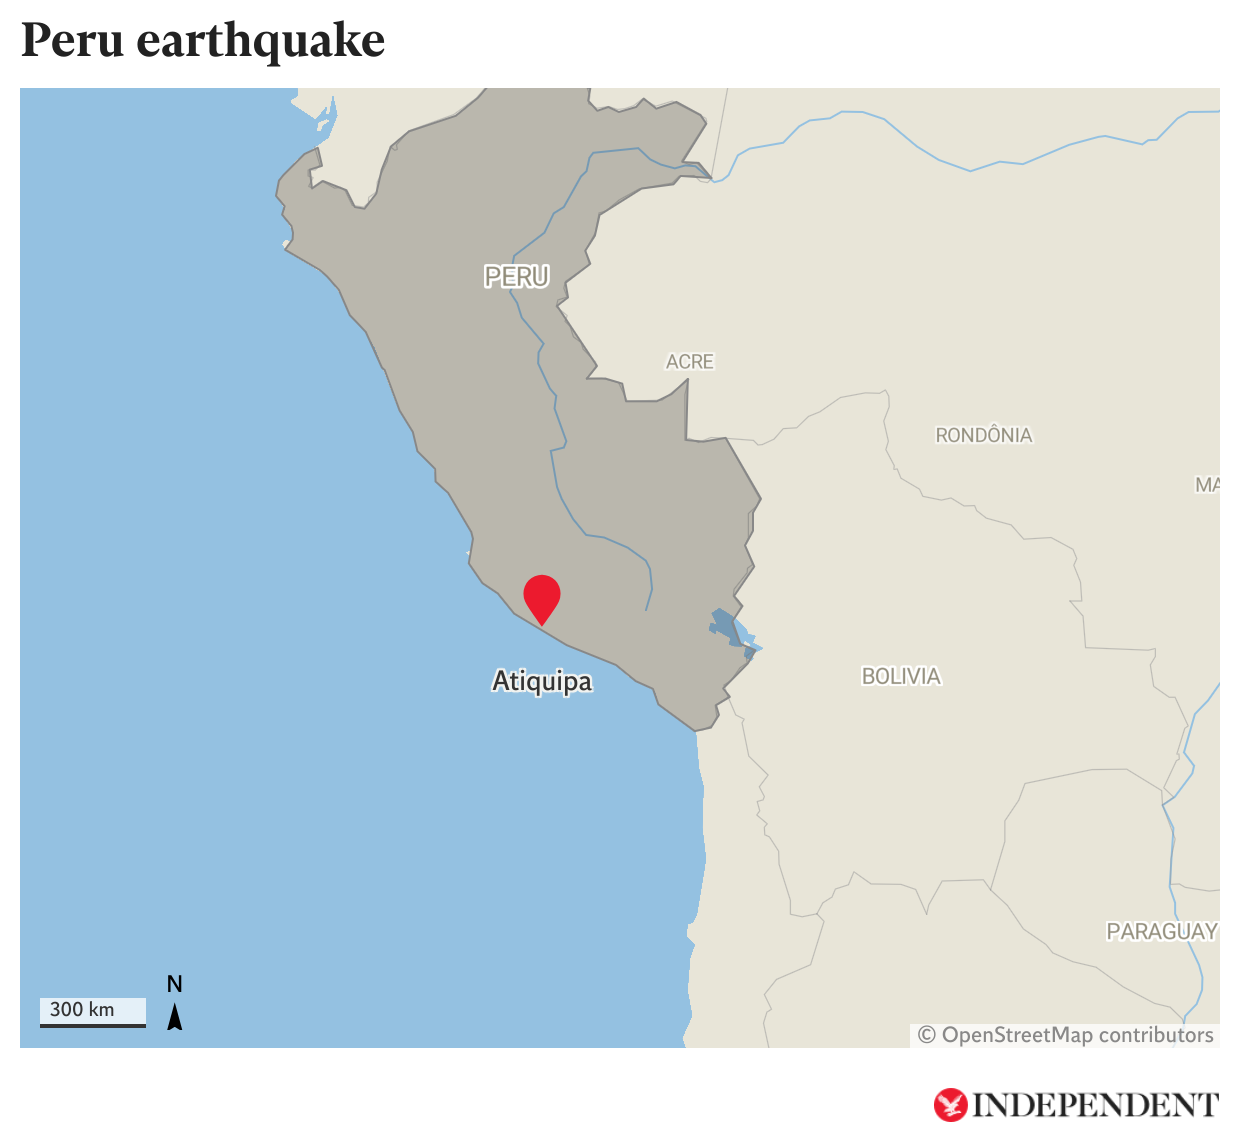 A 7.2 magnitude earthquake struck Peru